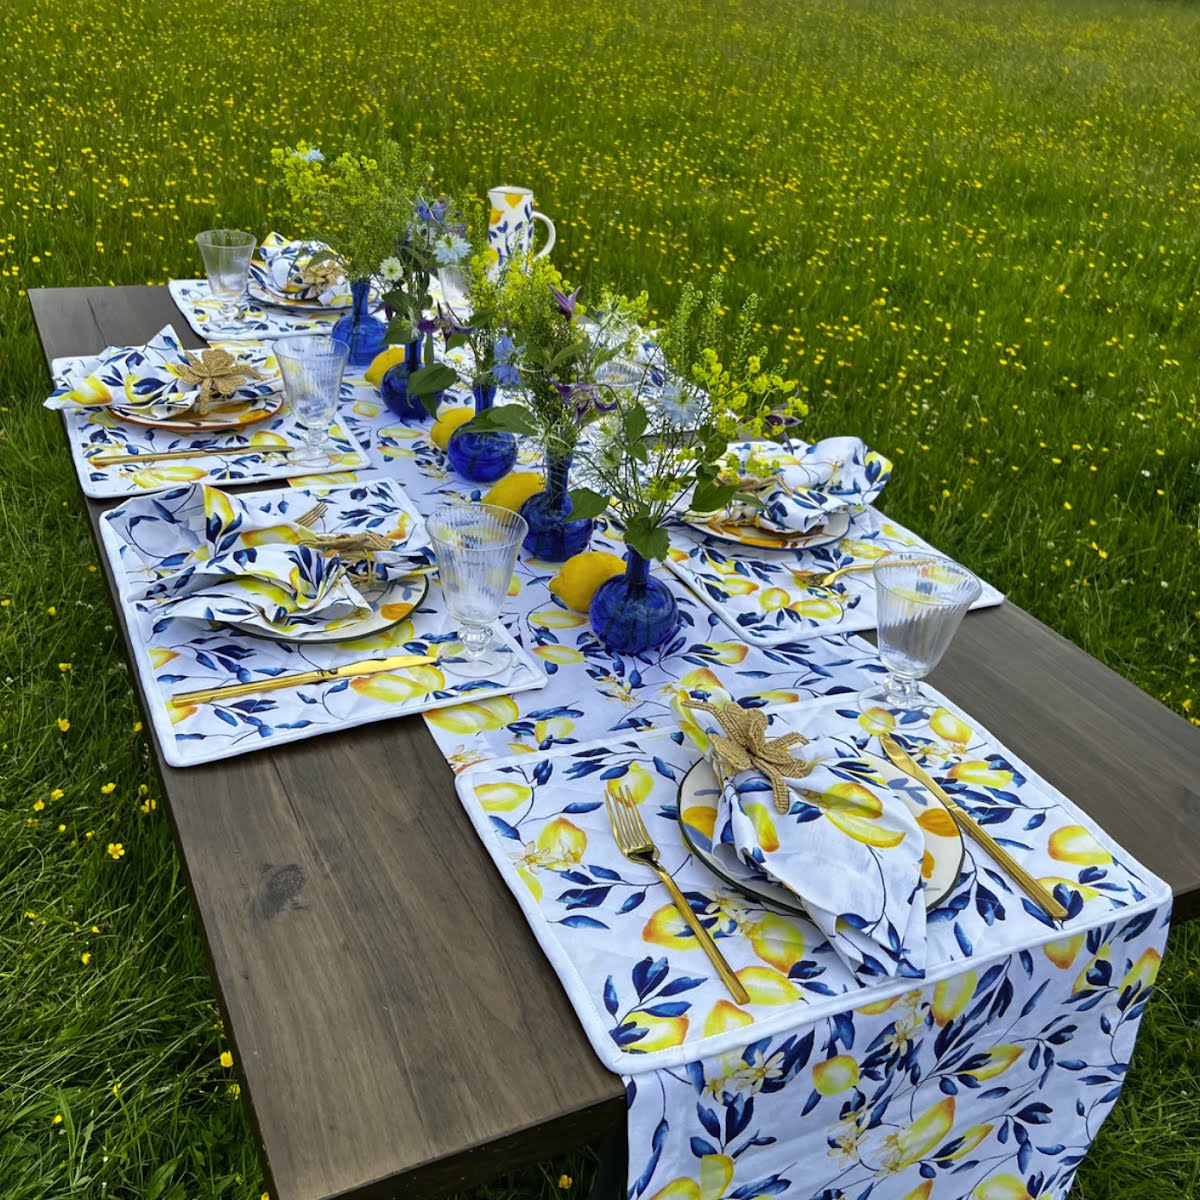 Lemon Blossom Print Print Runner,€45, The Designed Table